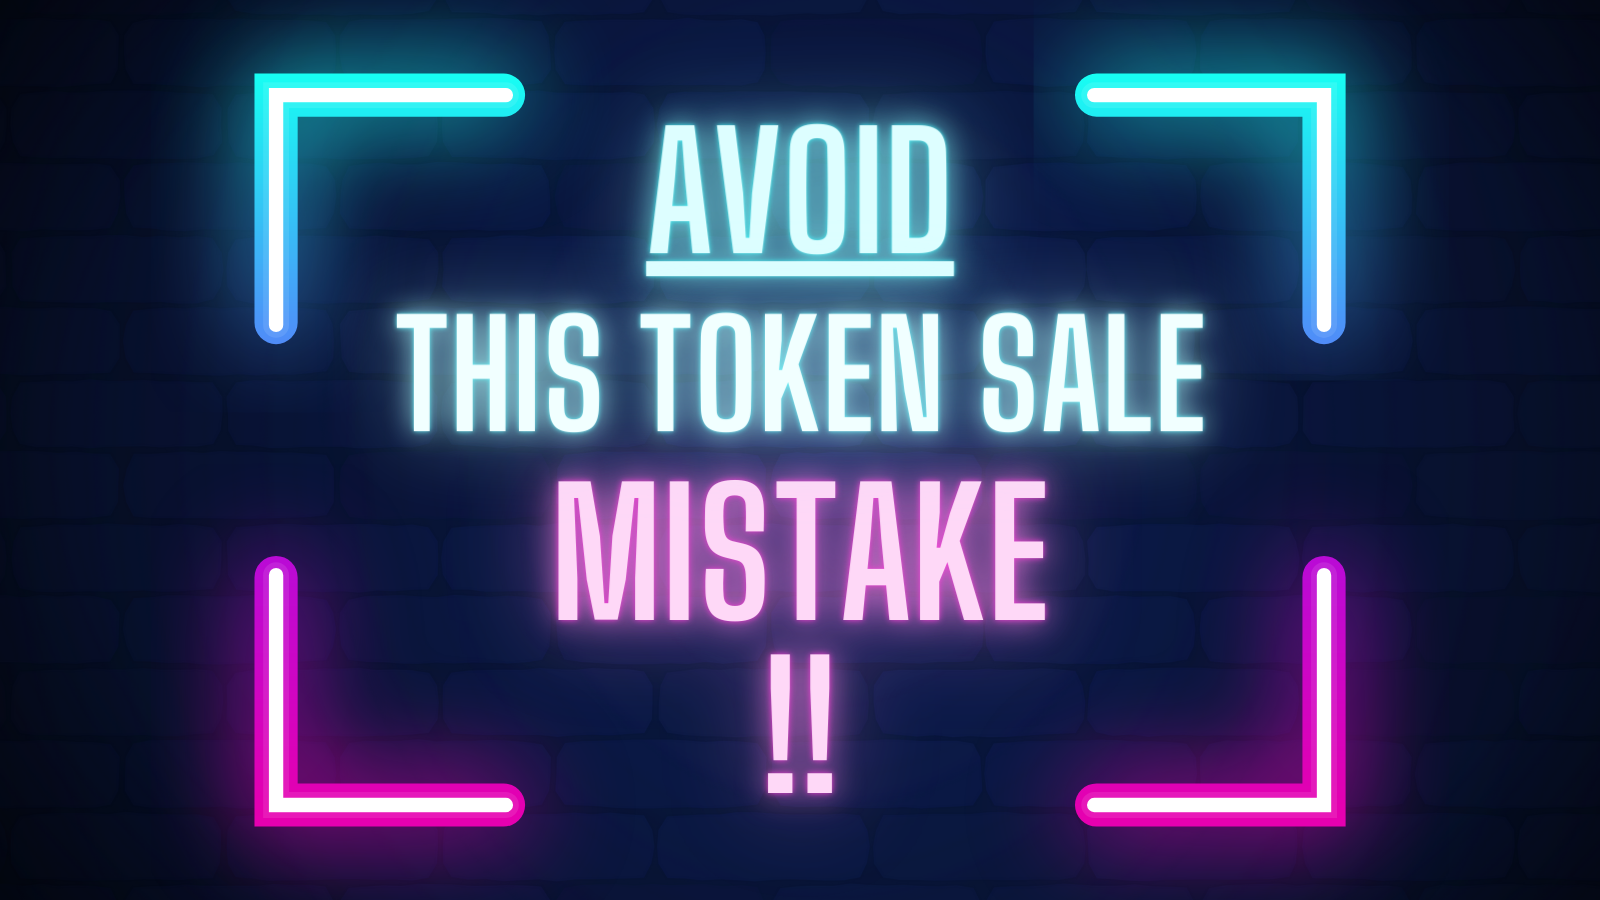 Avoid this token sale mistake!